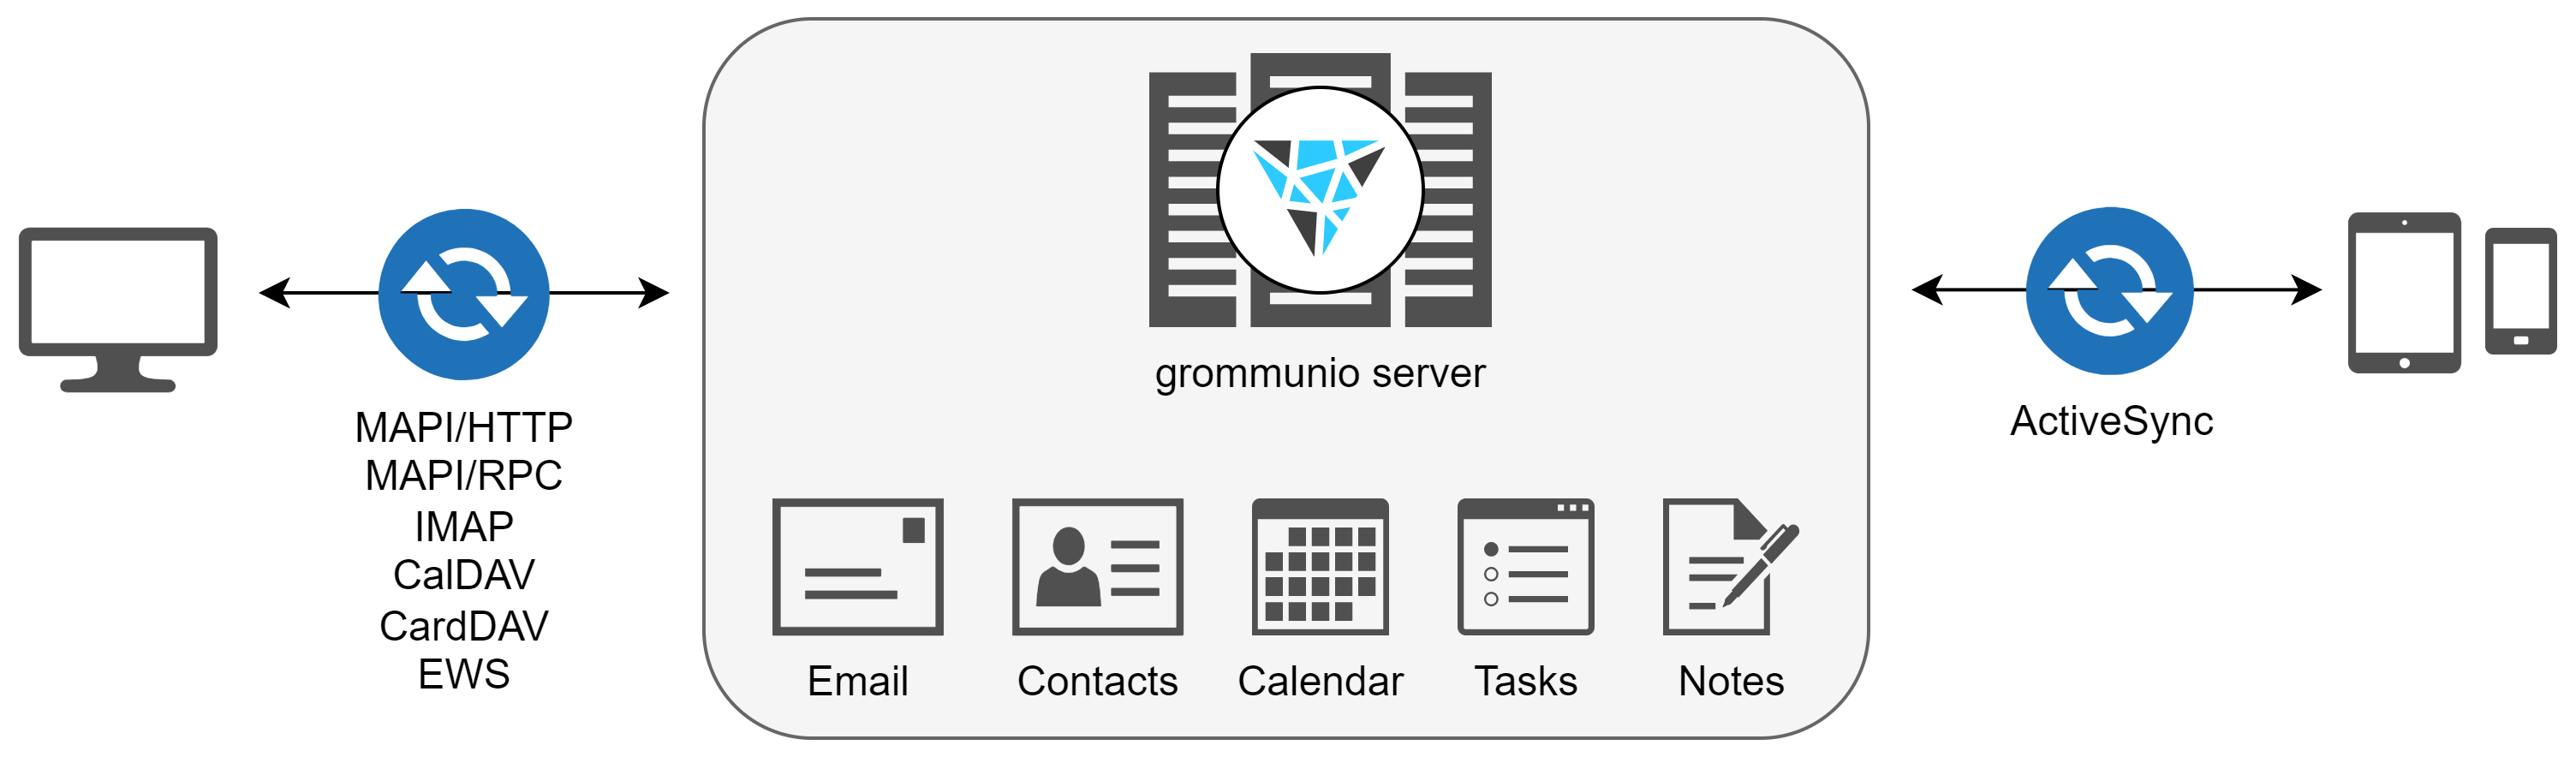 grommunio unterstützt Exchange ActiveSync 16.0 und 16.1